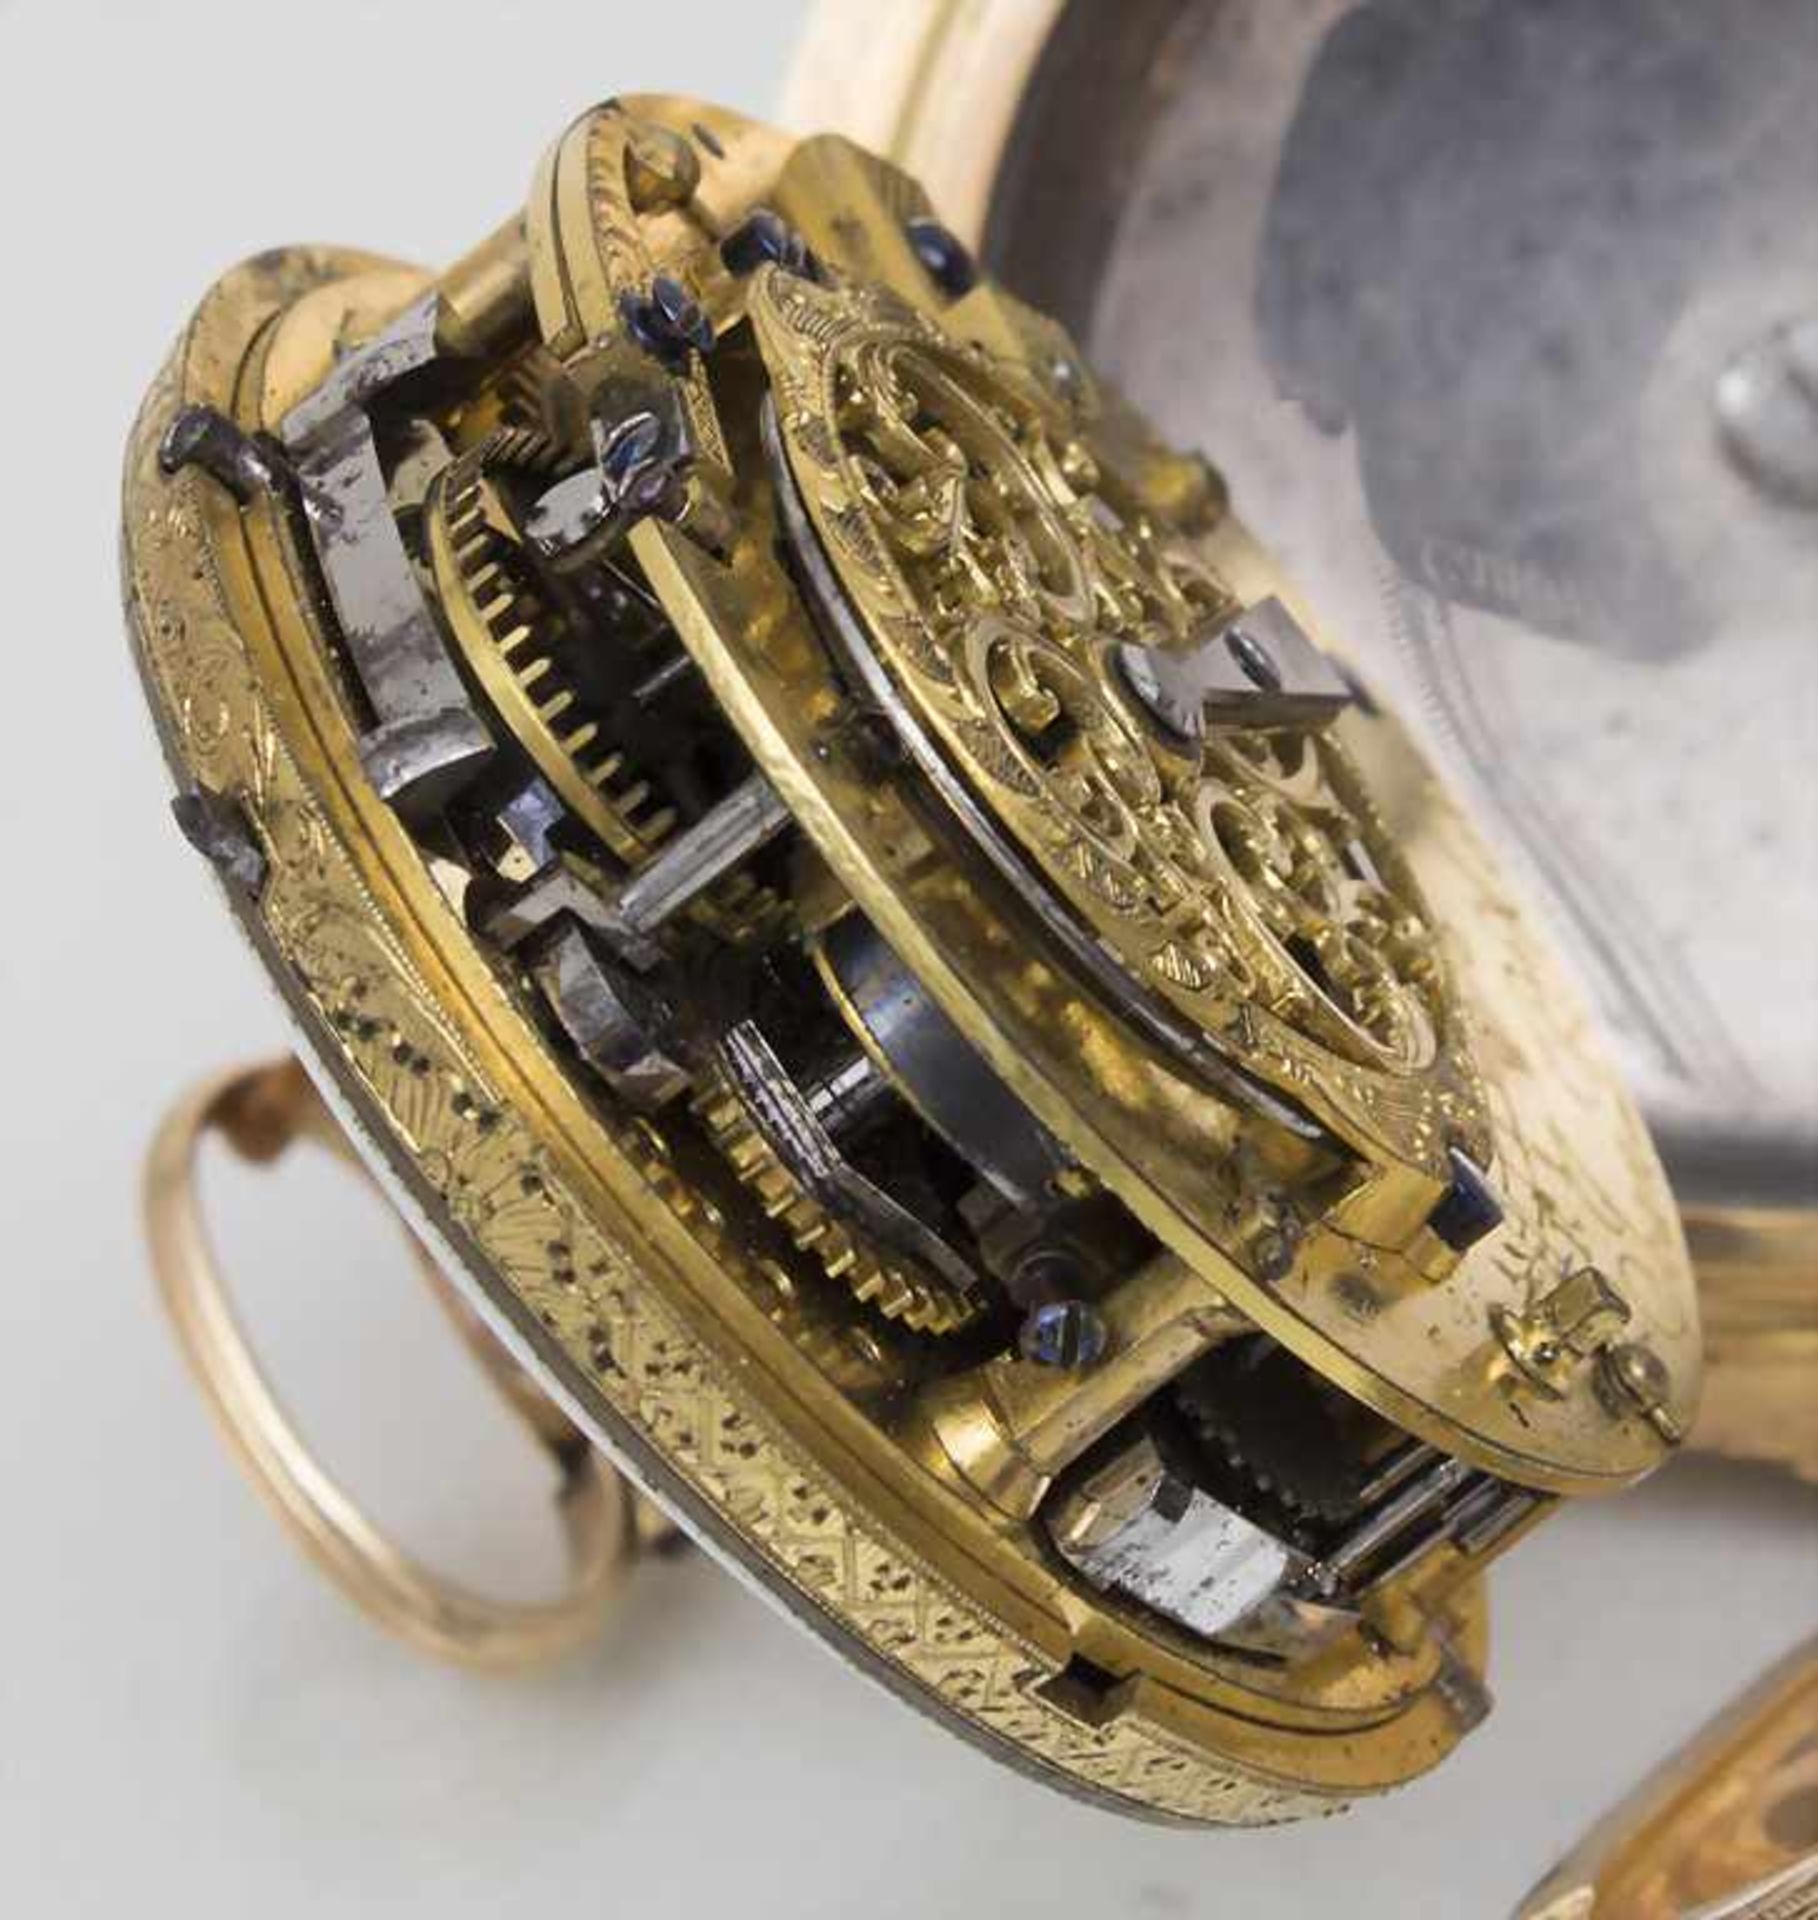 Offene Taschenuhr, Jean Pierre Moré a Paris, um 1770Gehäuse: Gold 18 Kt 750/000, Werk: ¼ Std.- - Bild 5 aus 5